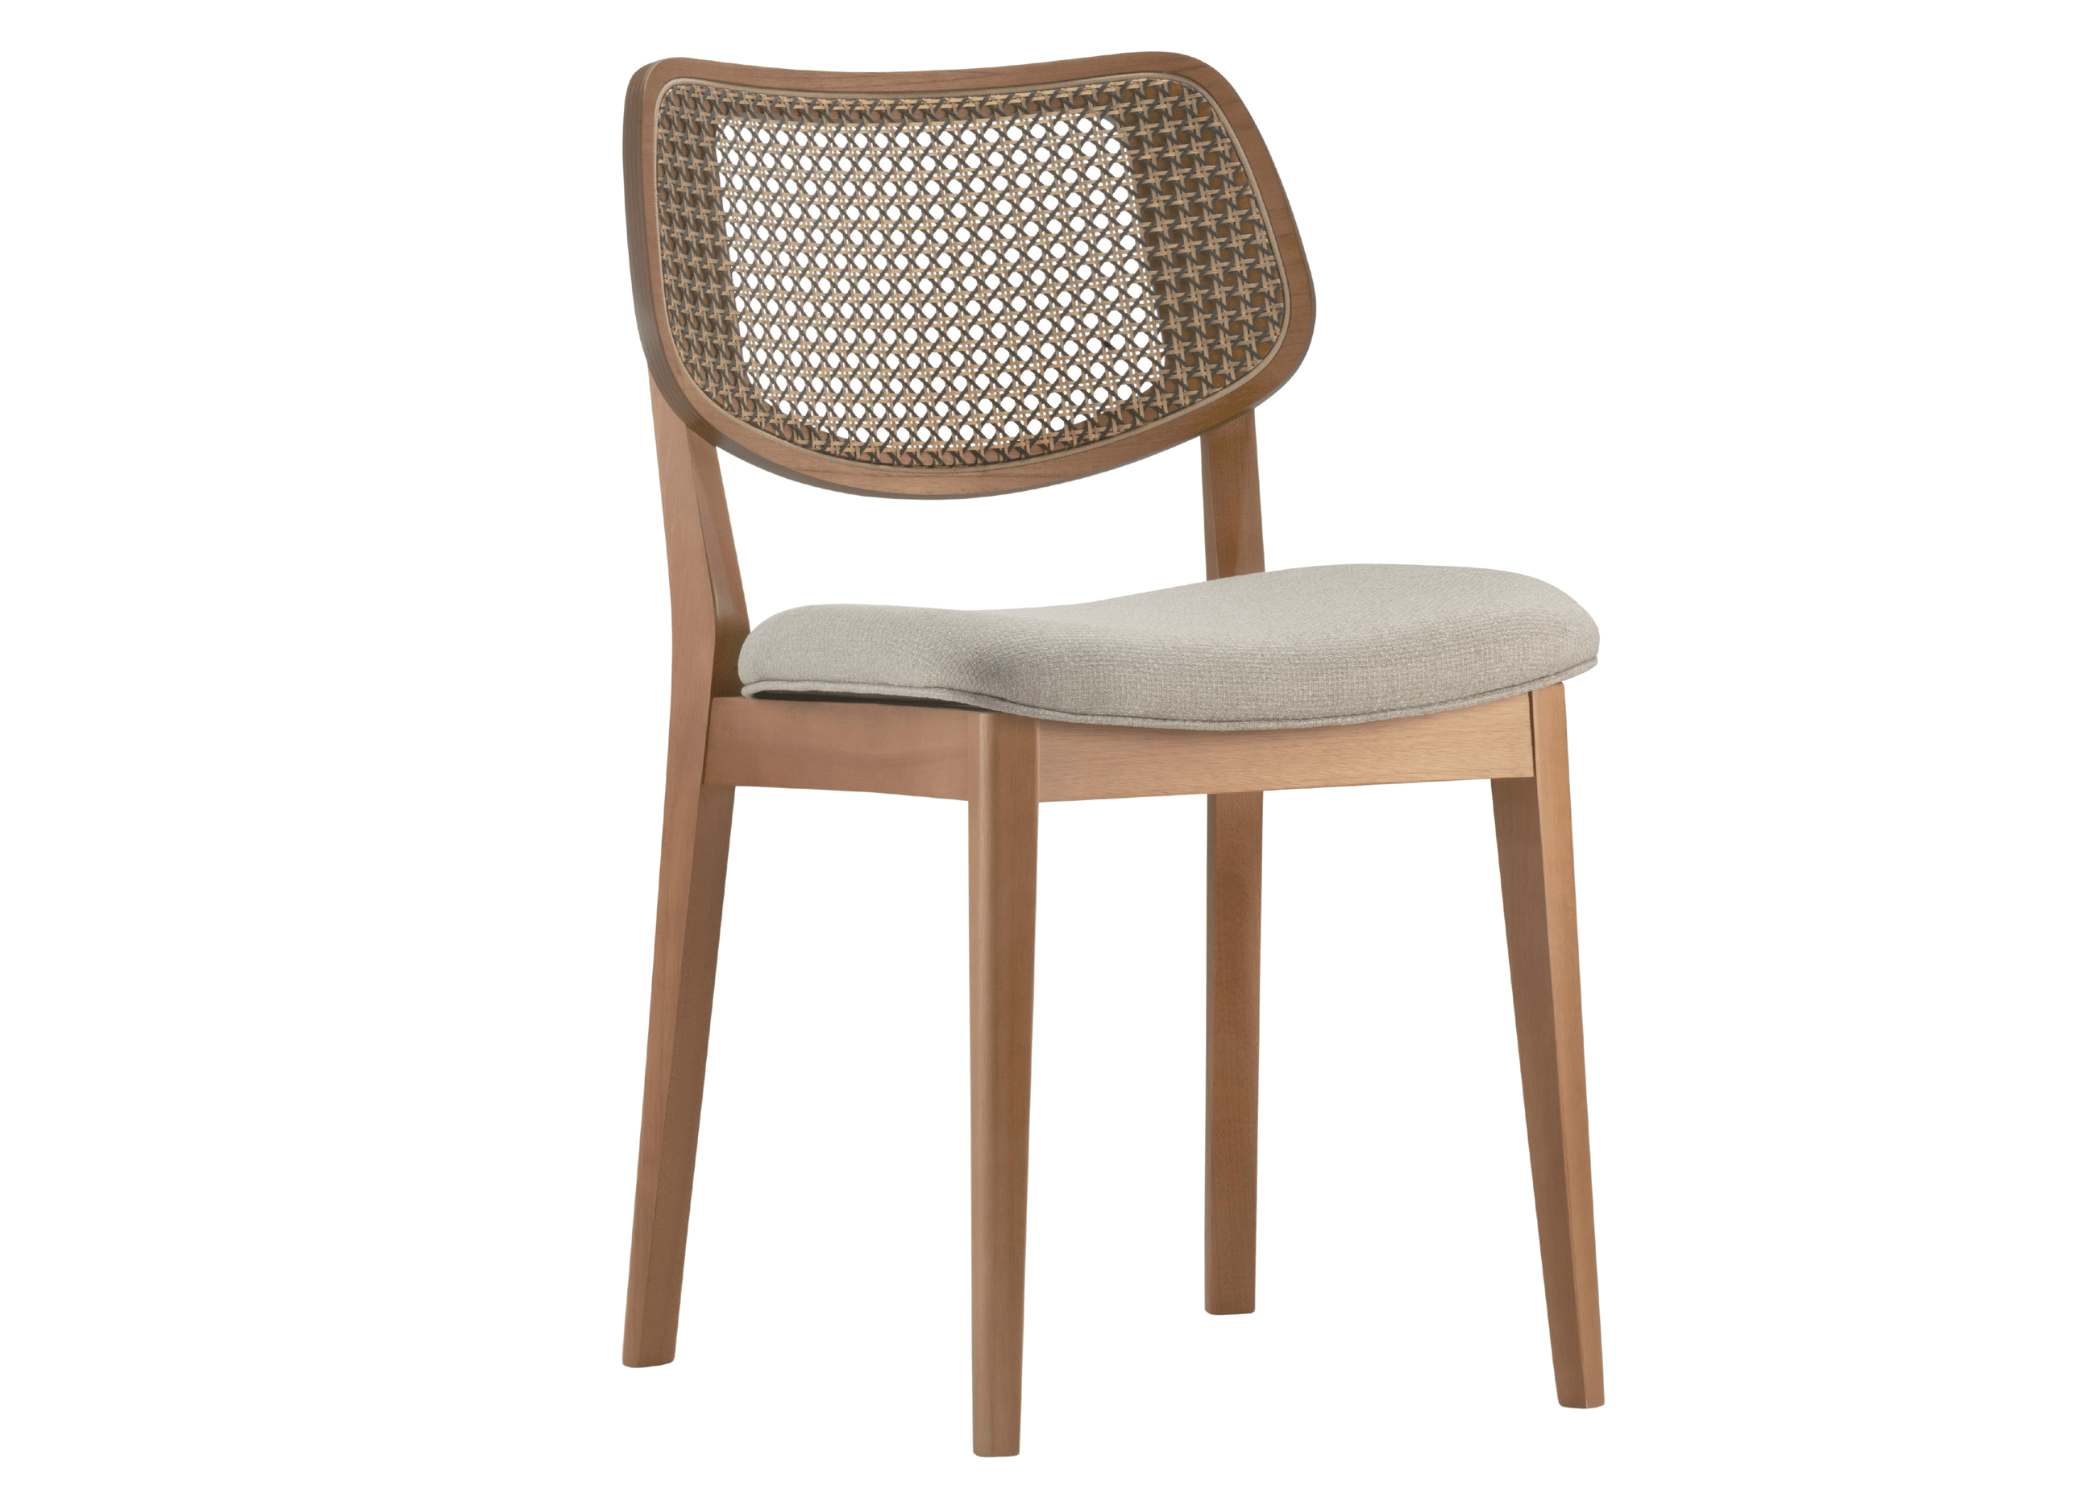 Cadeira Barry: base em lâmina de madeira para equilíbrio entre elegância e durabilidade.